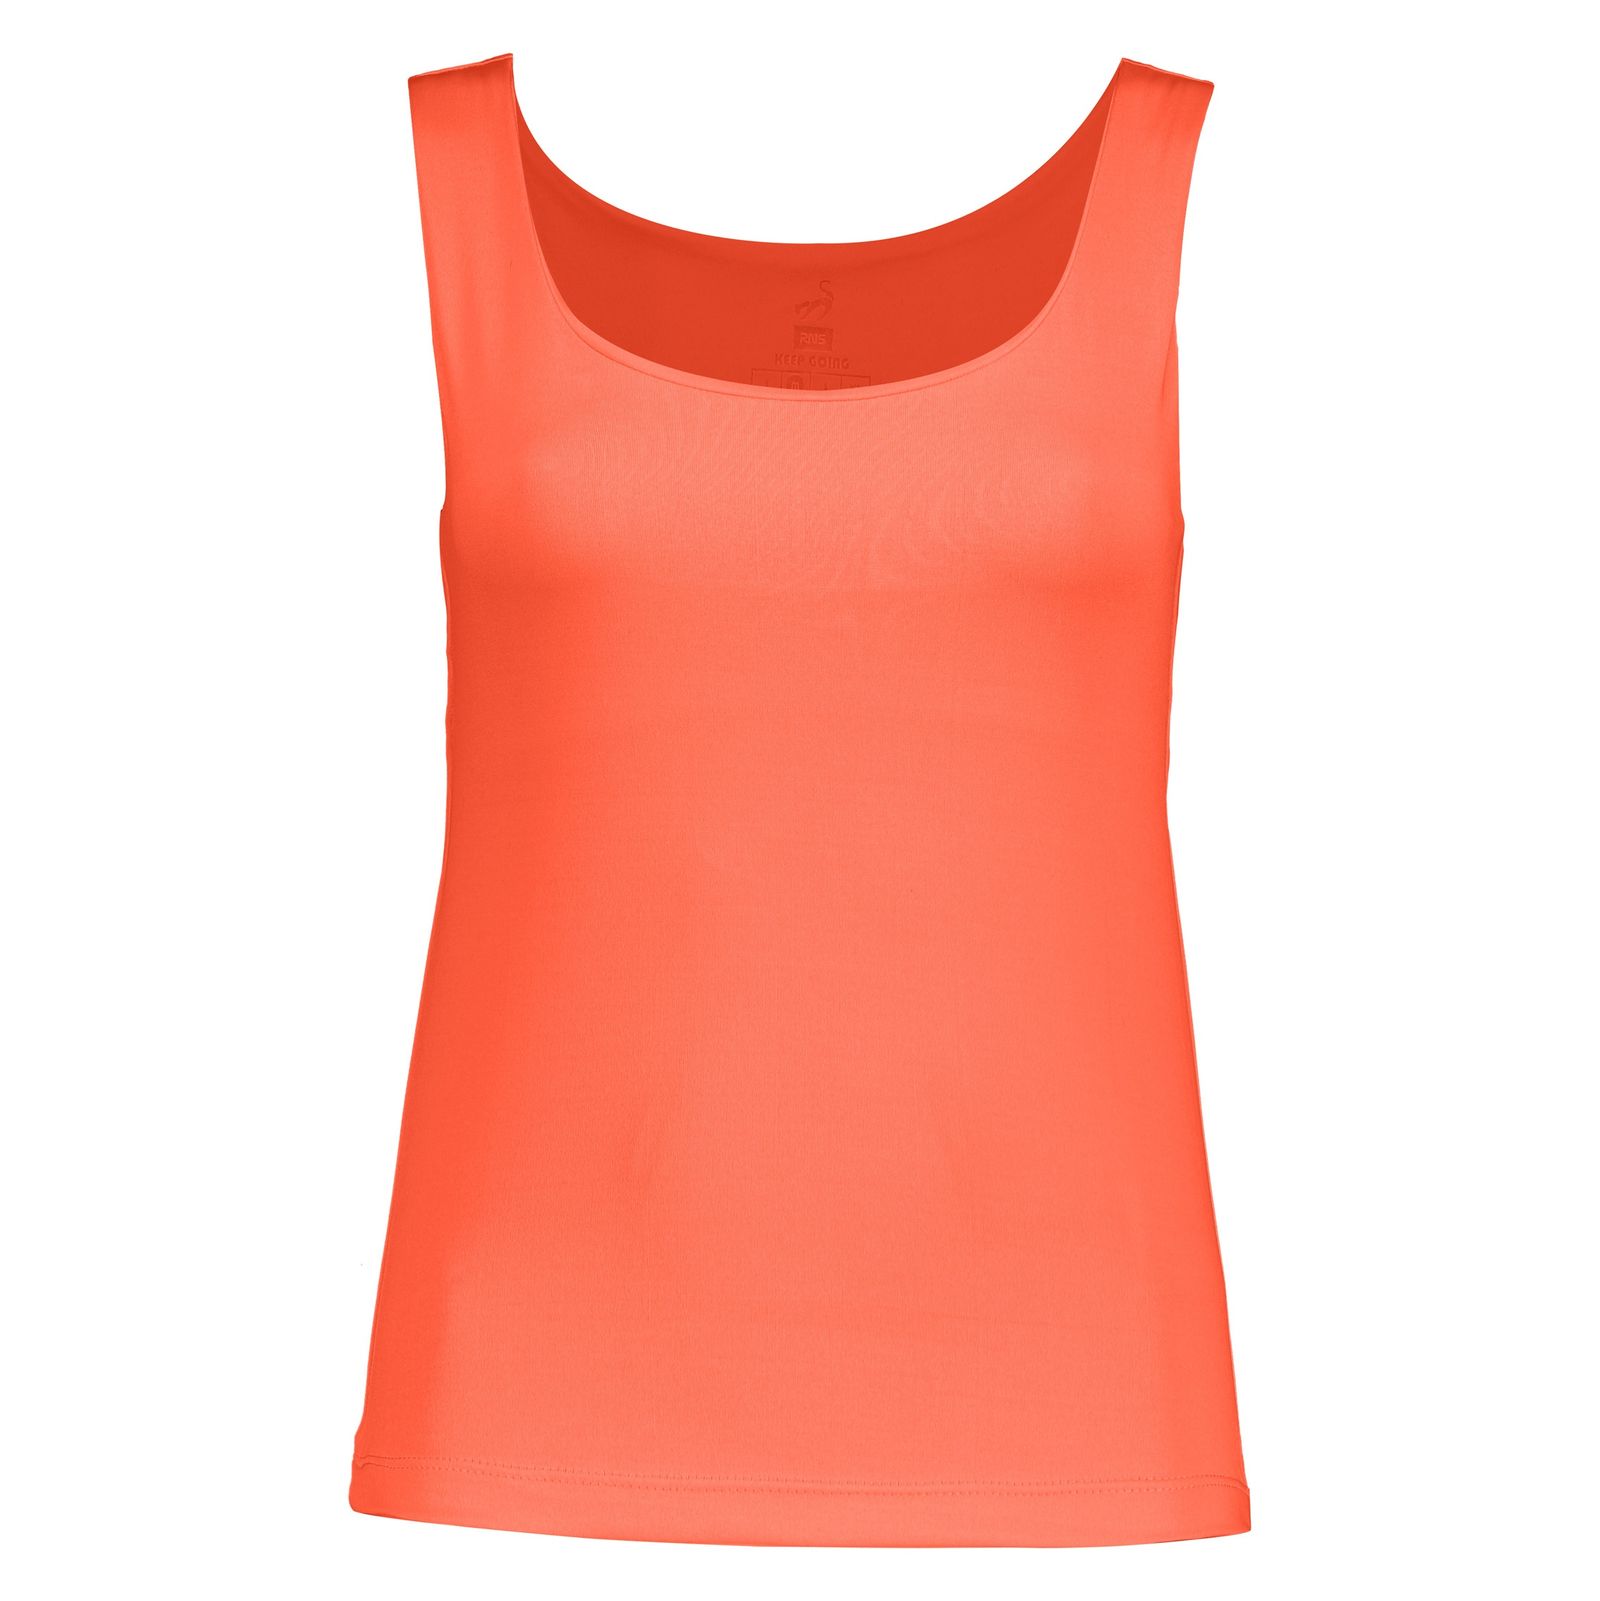 تاپ ورزشی زنانه آر ان اس مدل 2101026-23 - نارنجی - 2